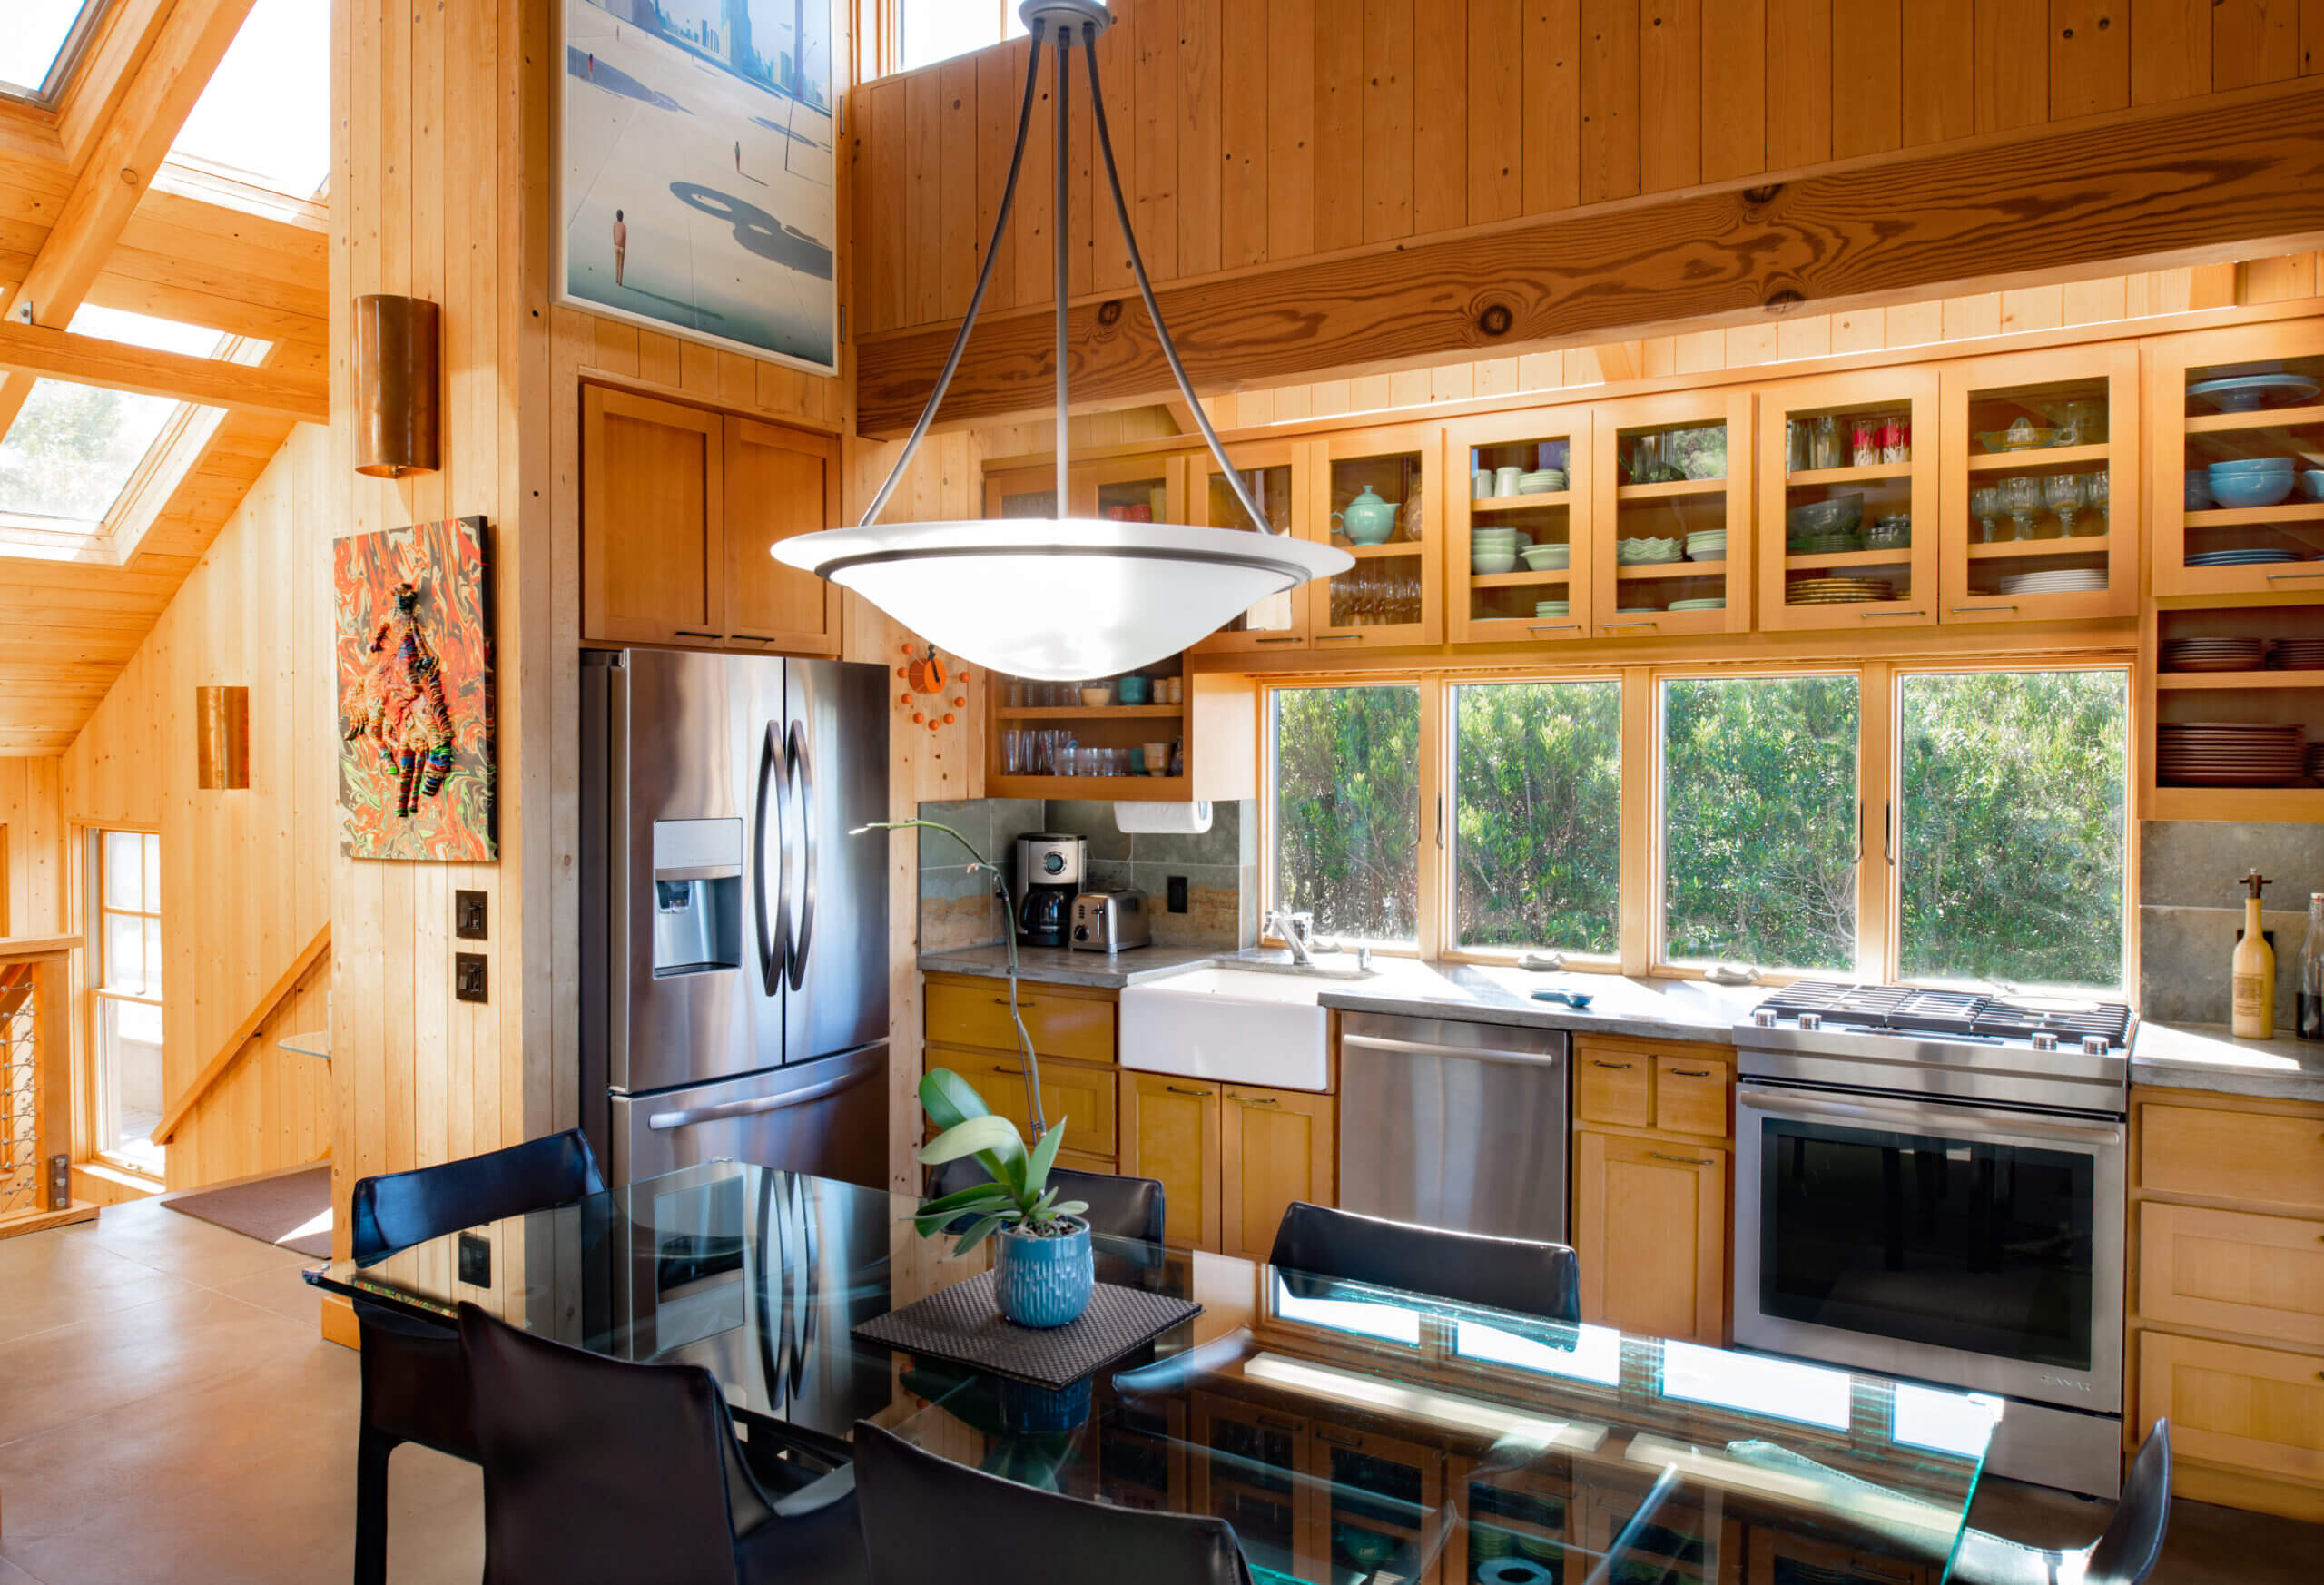 Oceanside: Art House kitchen